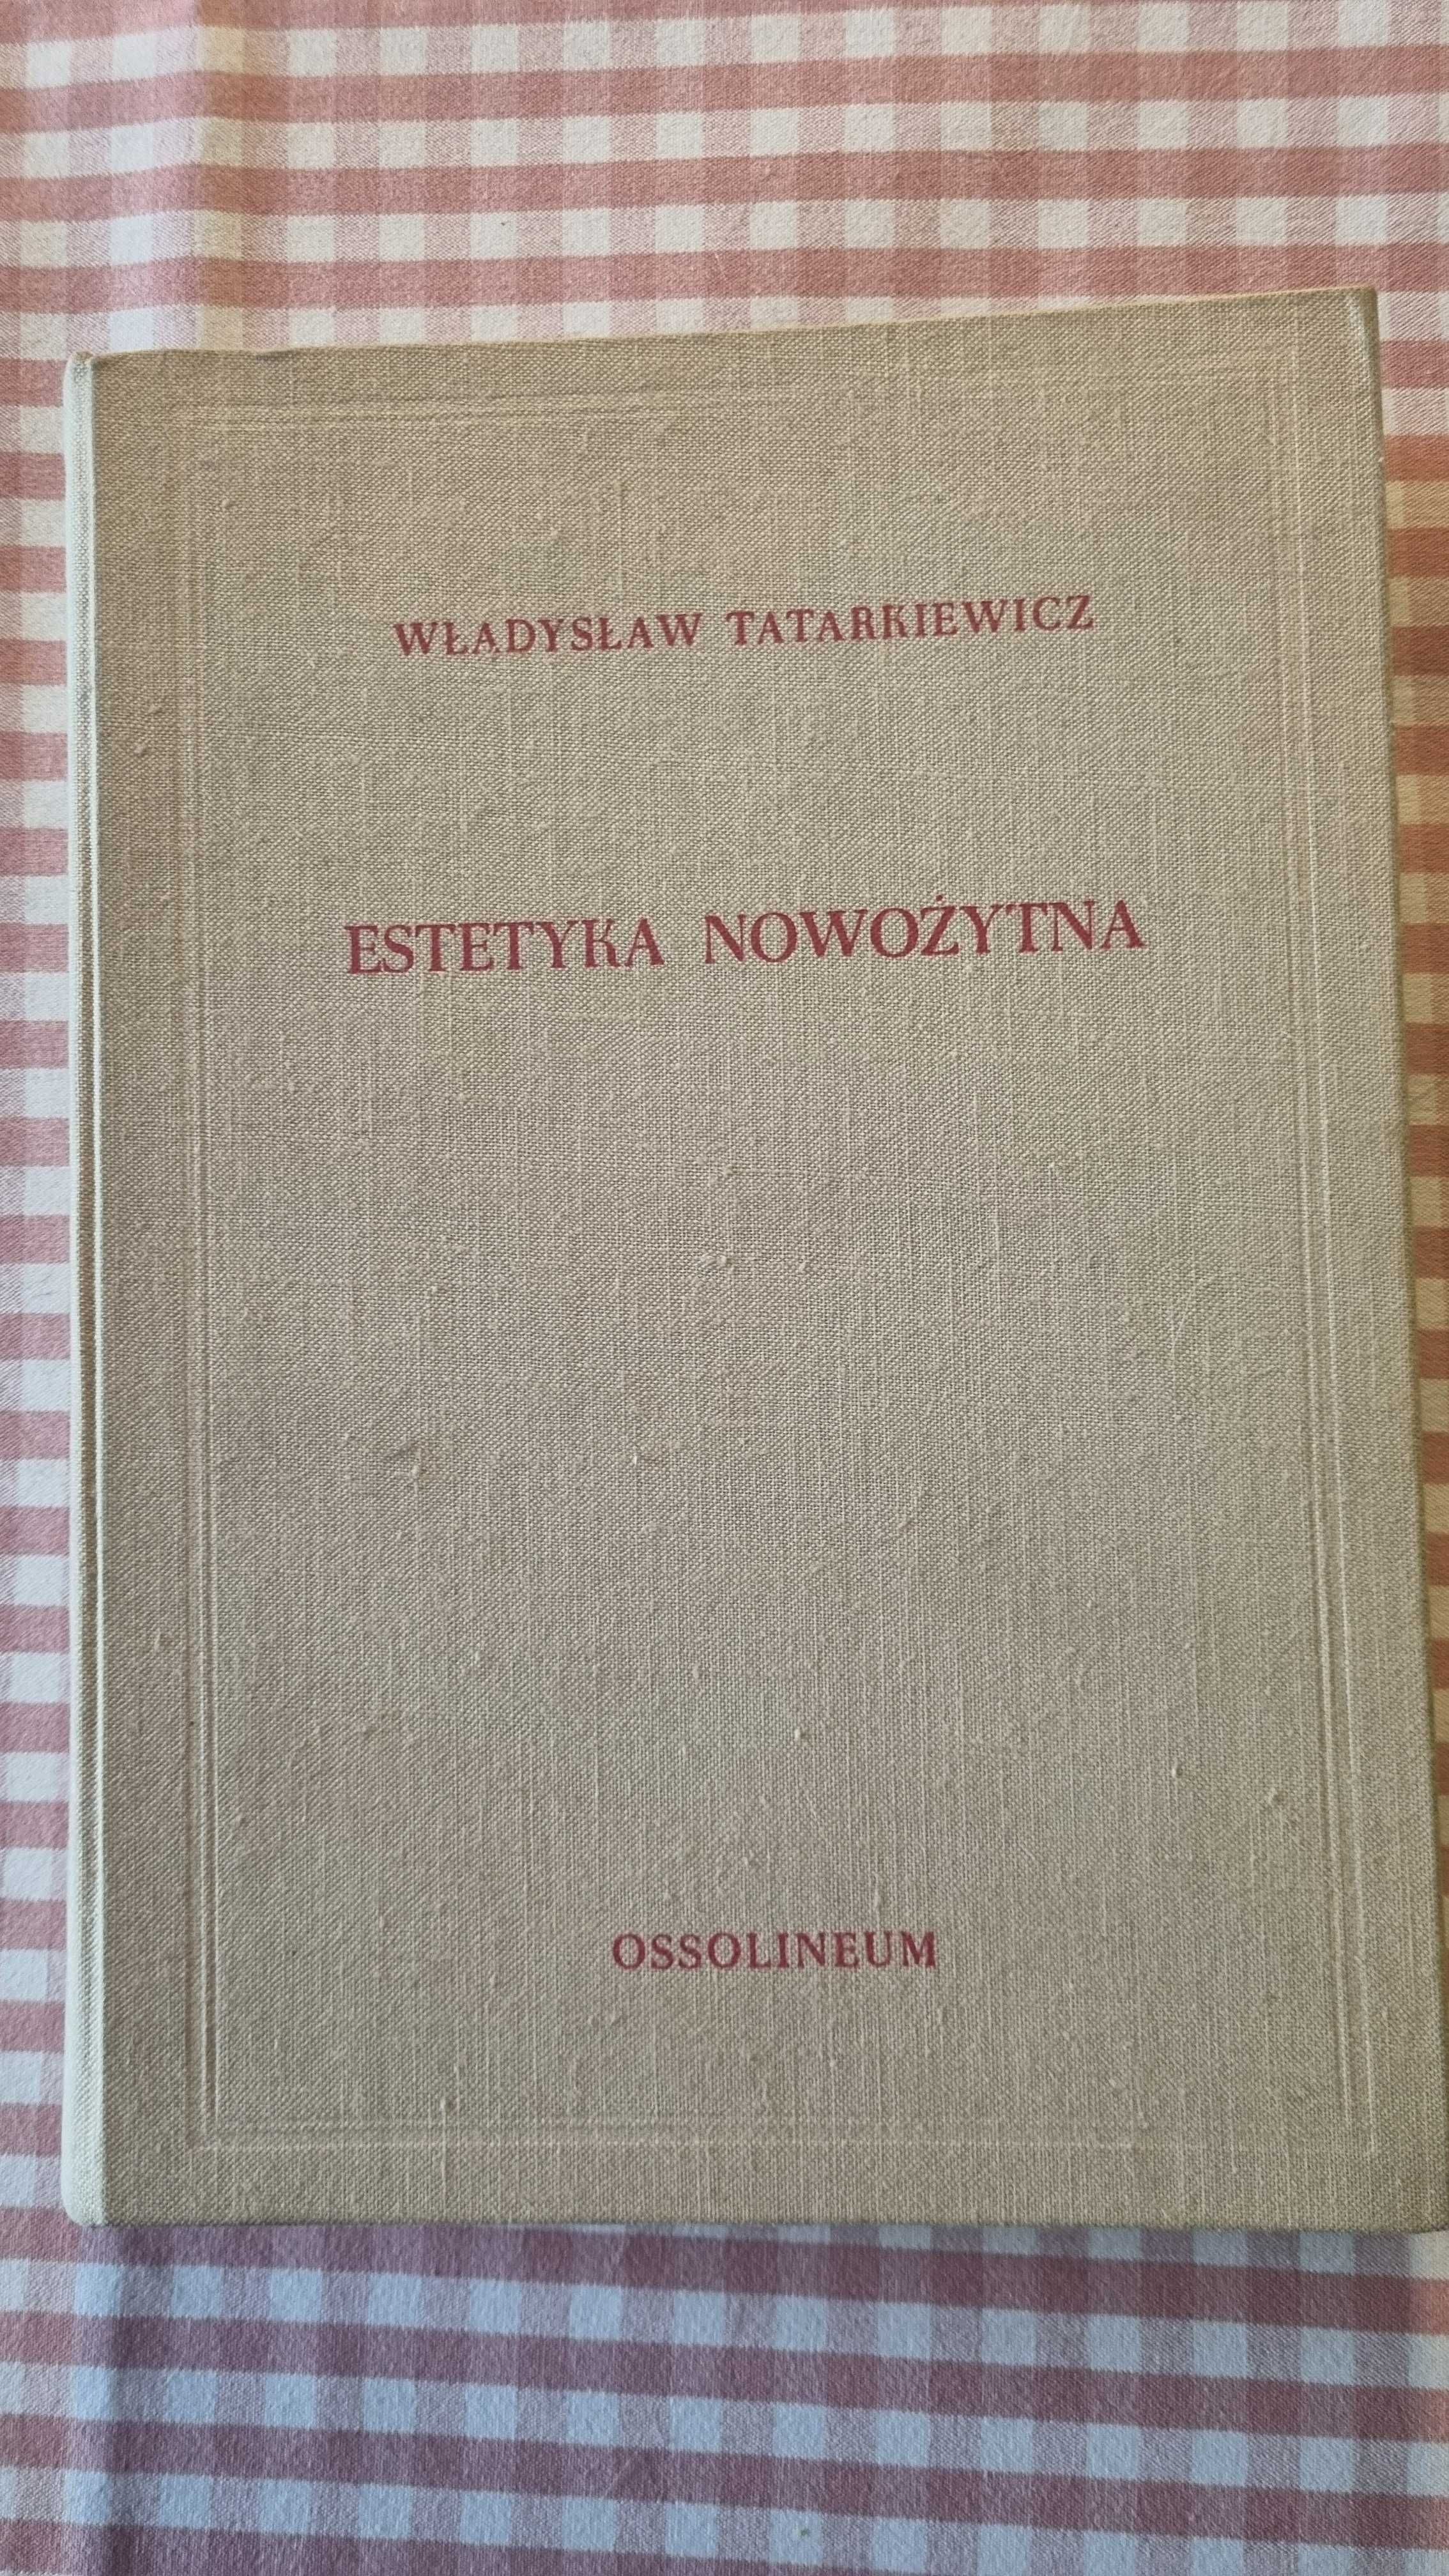 Władysław Tatarkiewicz. Historia estetyki tom. 3